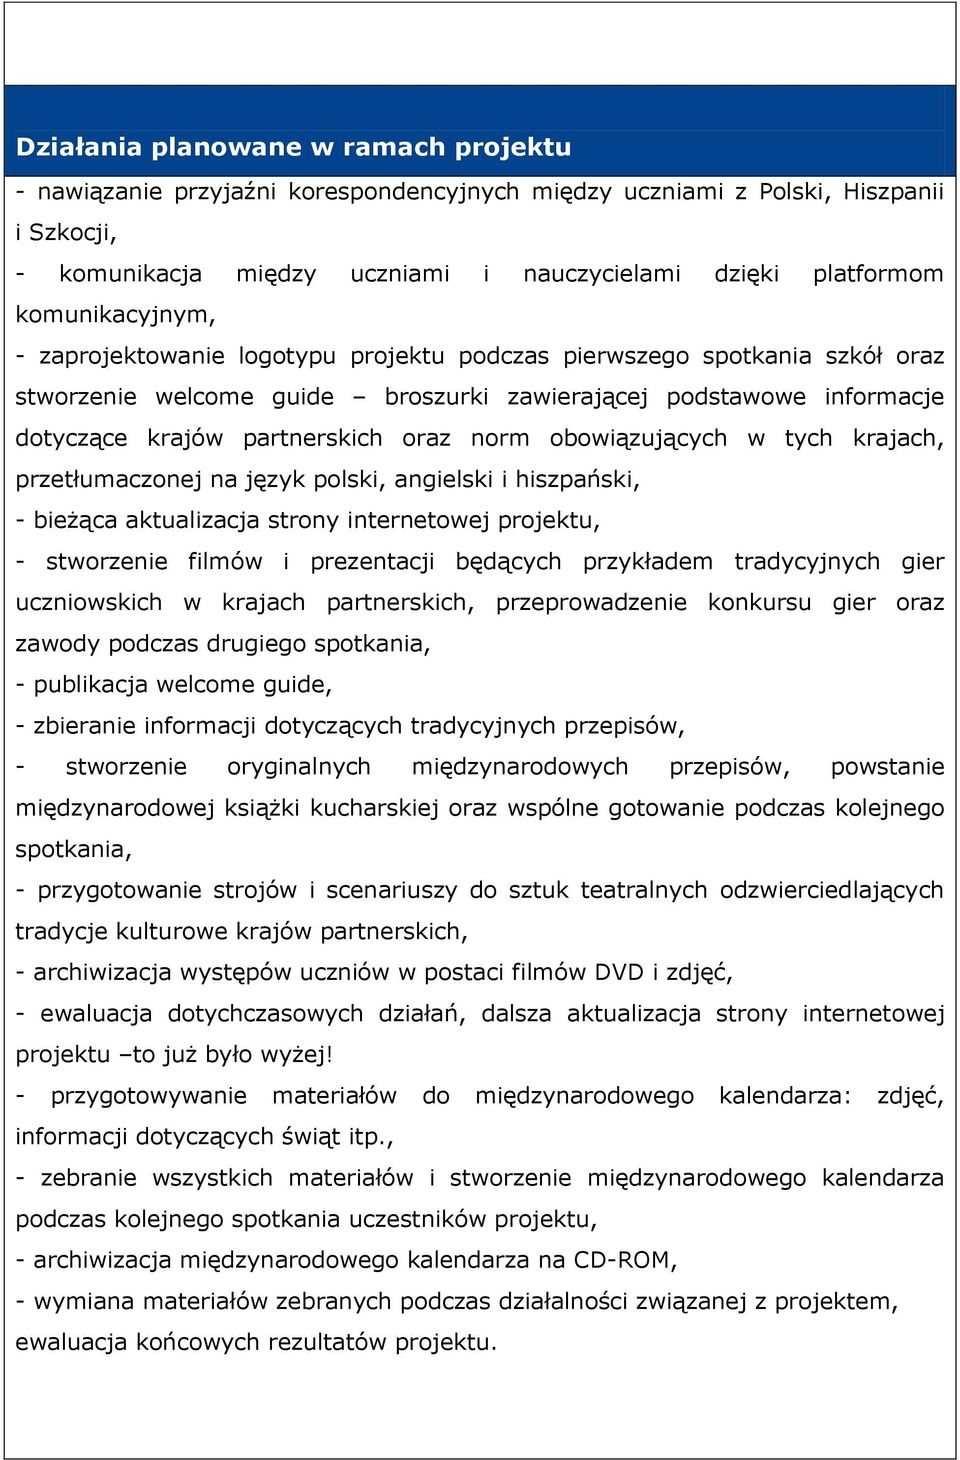 norm obowiązujących w tych krajach, przetłumaczonej na język polski, angielski i hiszpański, - bieżąca aktualizacja strony internetowej projektu, - stworzenie filmów i prezentacji będących przykładem